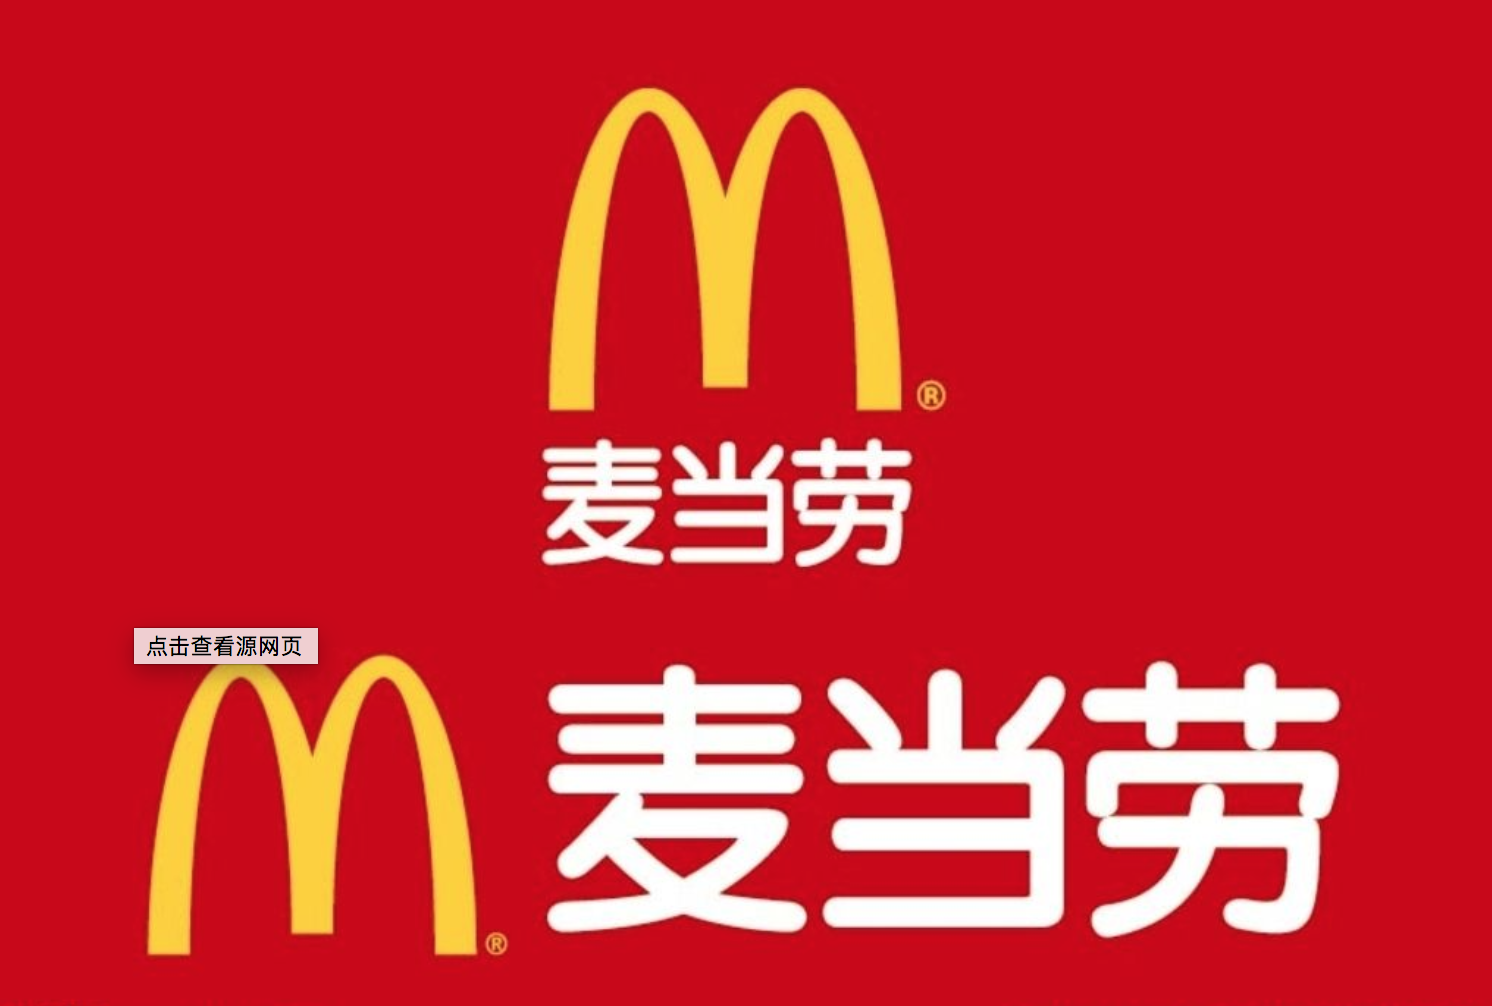 深圳logo设计:麦当劳品牌logo背后的深意你知道吗?